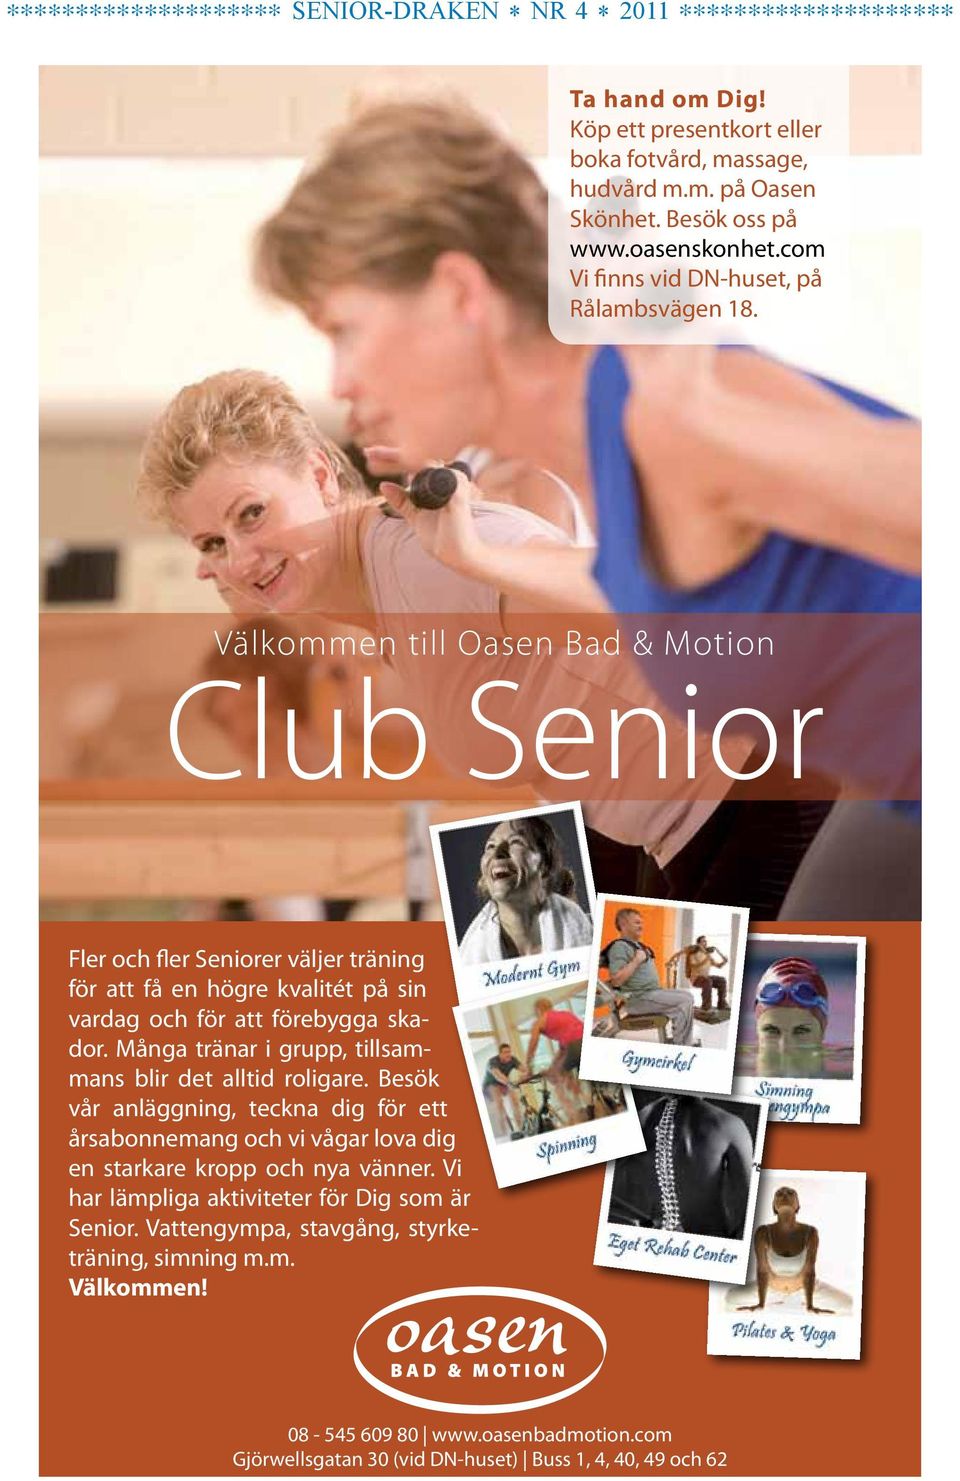 Välkommen till Oasen Bad & Motion Club Senior Fler och fler Seniorer väljer träning för att få en högre kvalitét på sin vardag och för att förebygga skador.